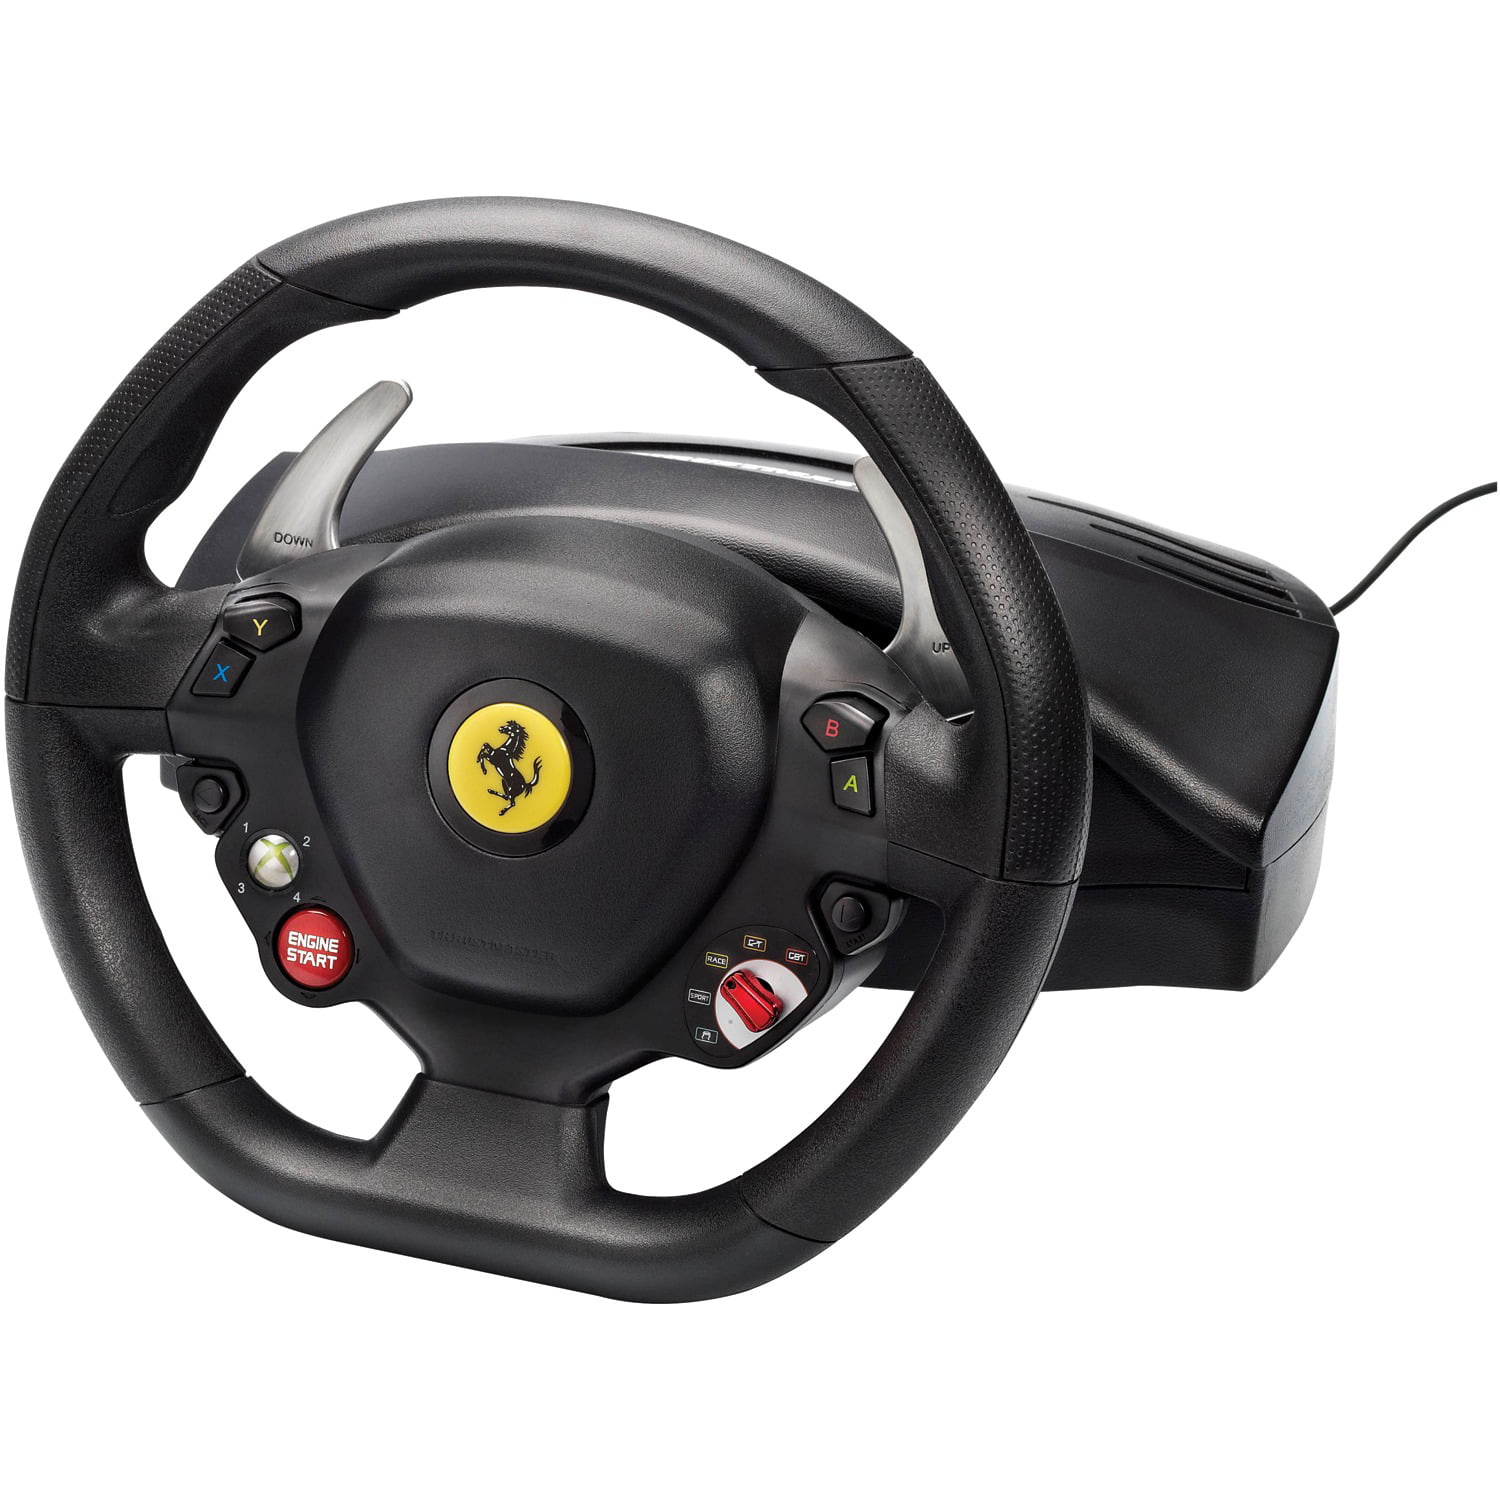 Thrustmaster Ferrari 458 Racing Wheel Xbox 360 Black